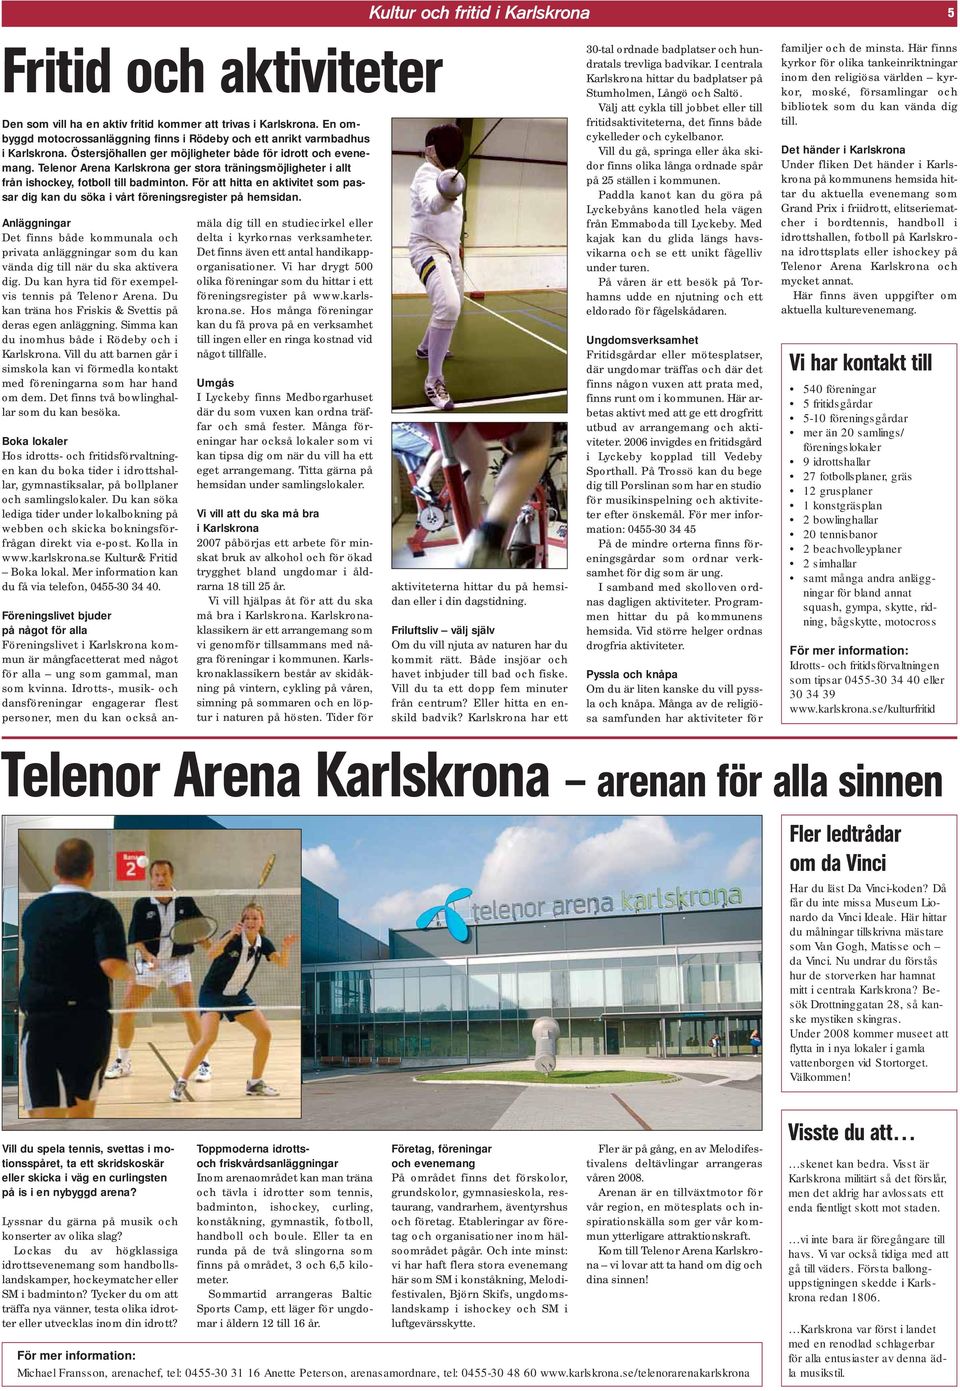 Telenor Arena Karlskrona ger stora träningsmöjligheter i allt från ishockey, fotboll till badminton. För att hitta en aktivitet som passar dig kan du söka i vårt föreningsregister på hemsidan.